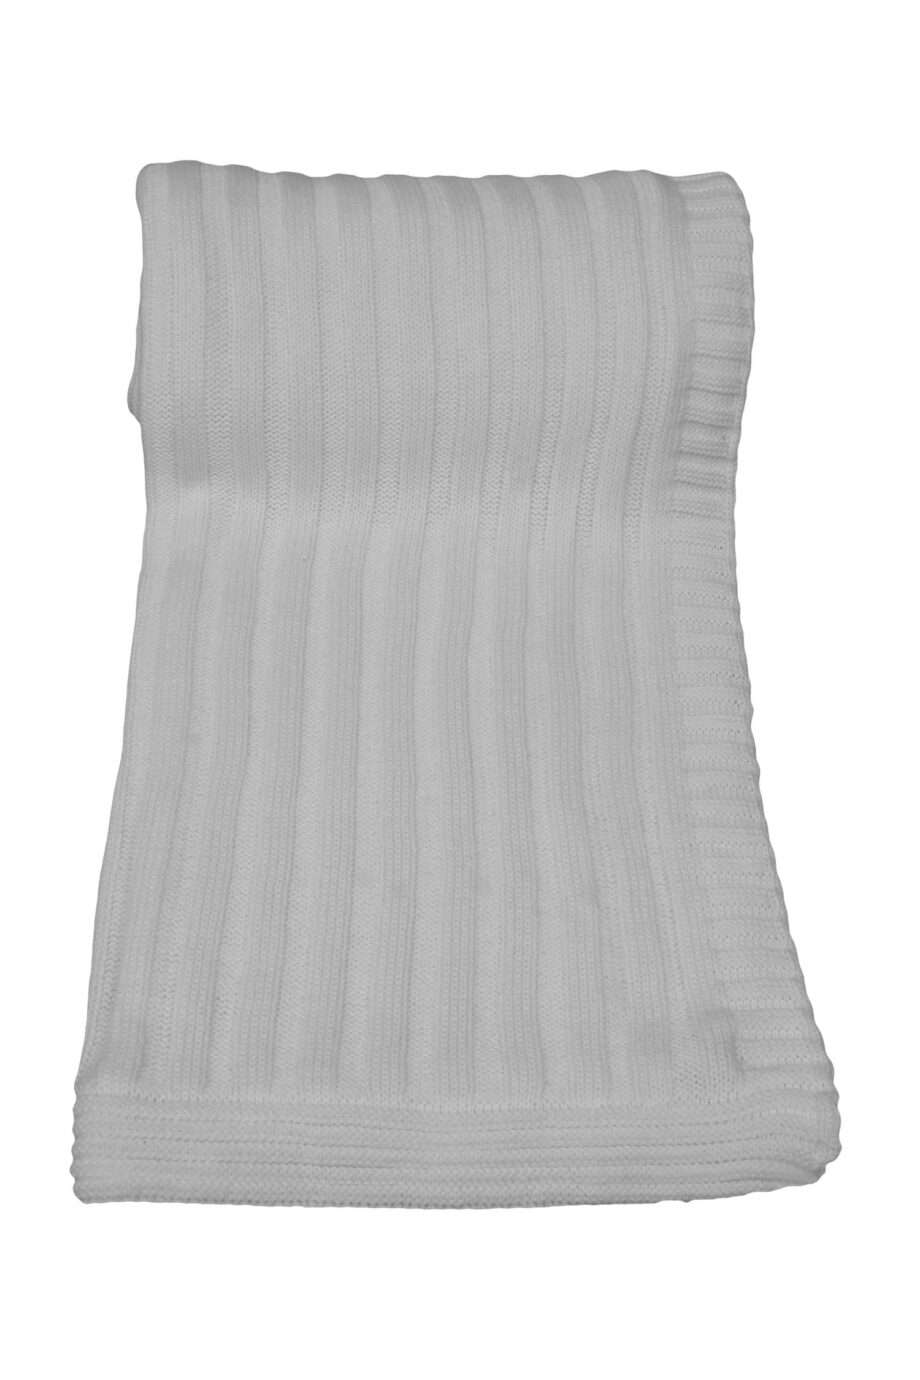 ribs white knitted cotton plaid medium